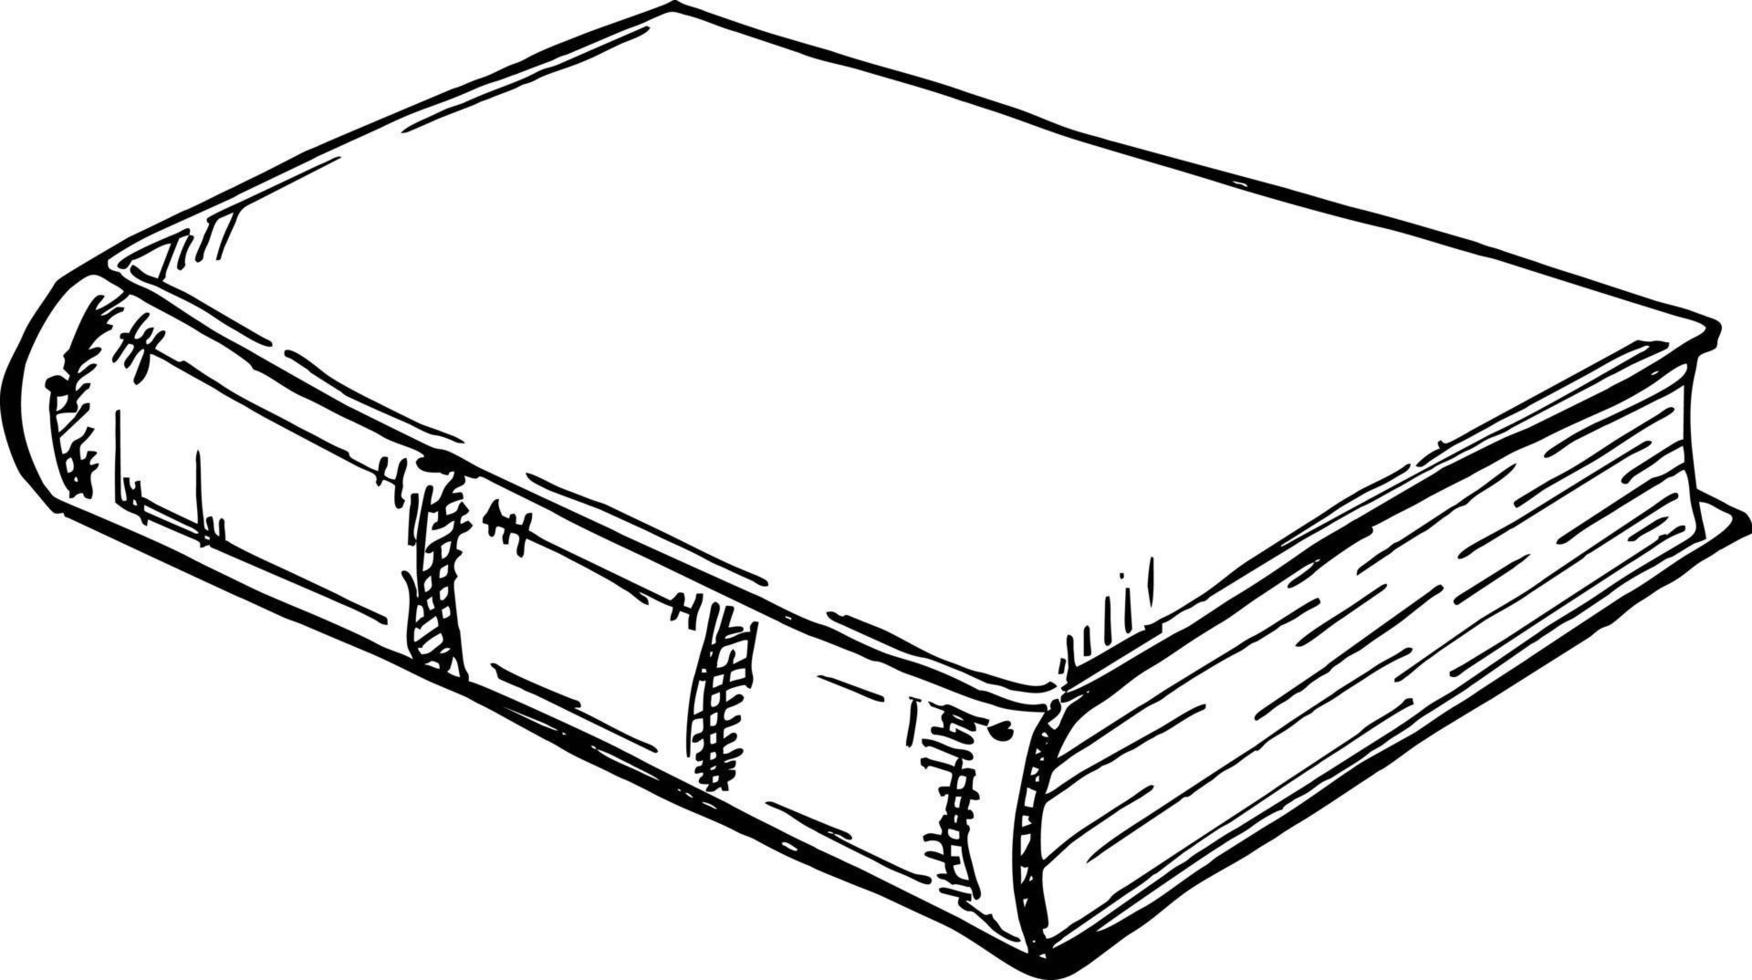 quaderno libro da disegno chiuso, bianco e nero, disegnato a mano, stile  schizzo 10556209 Arte vettoriale a Vecteezy